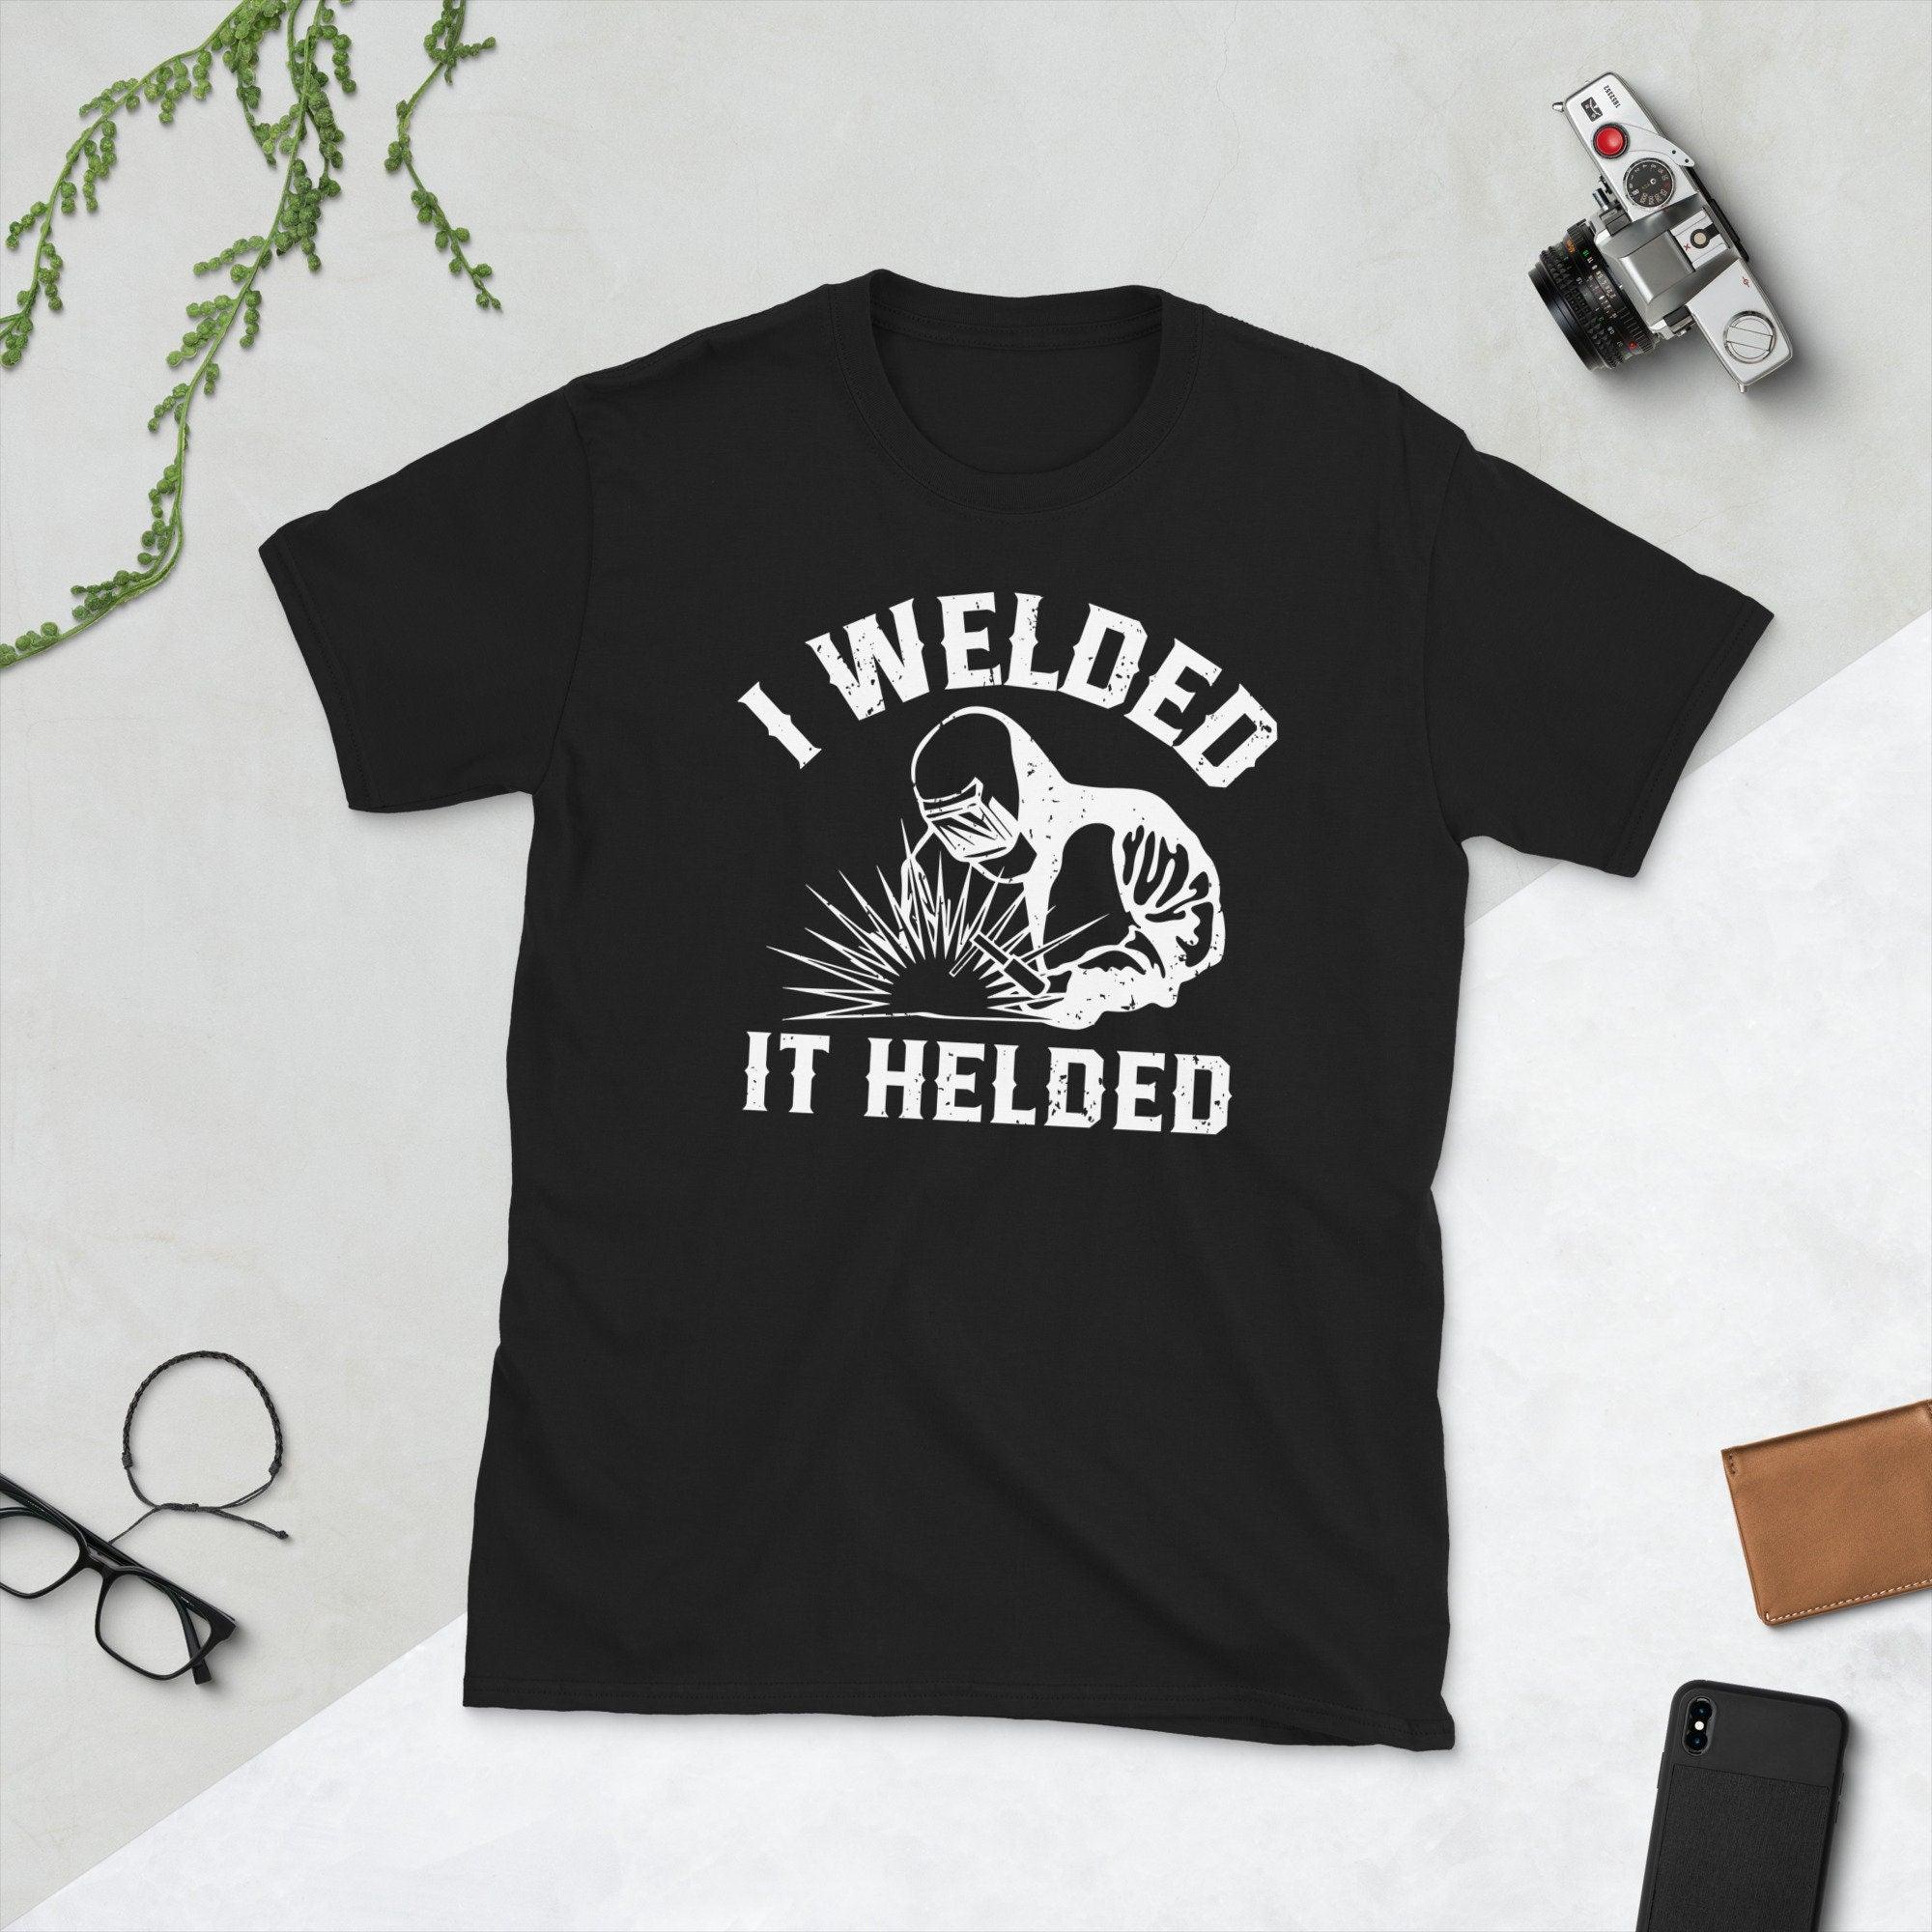 I Welded It Helded, унісекс-футболка Welder, весела футболка Welder Welding у подарунок із ретро-зварювальним силуетом - plusminusco.com